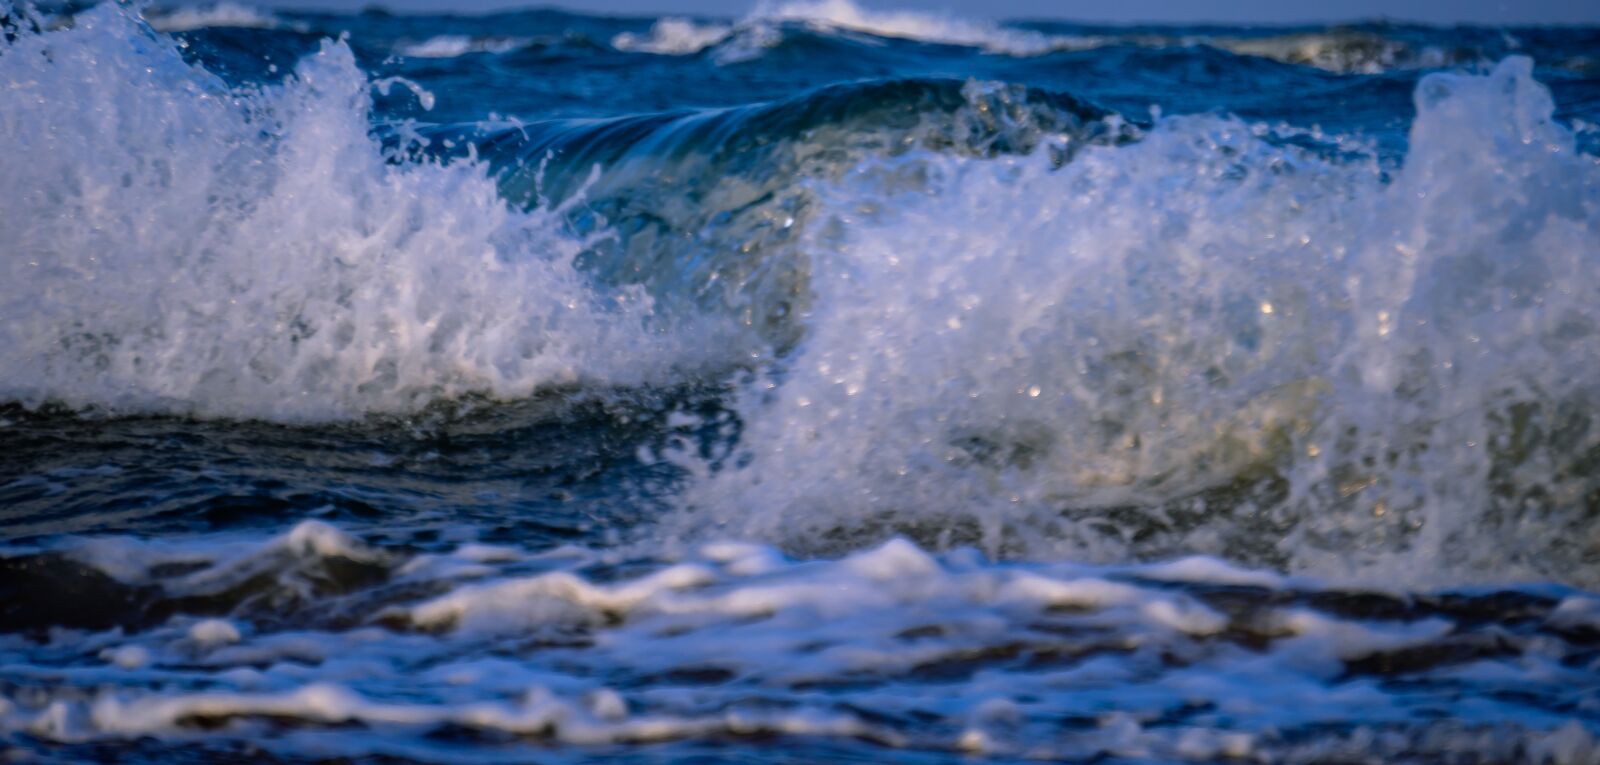 Sony E 55-210mm F4.5-6.3 OSS sample photo. Sea, ocean, beach photography